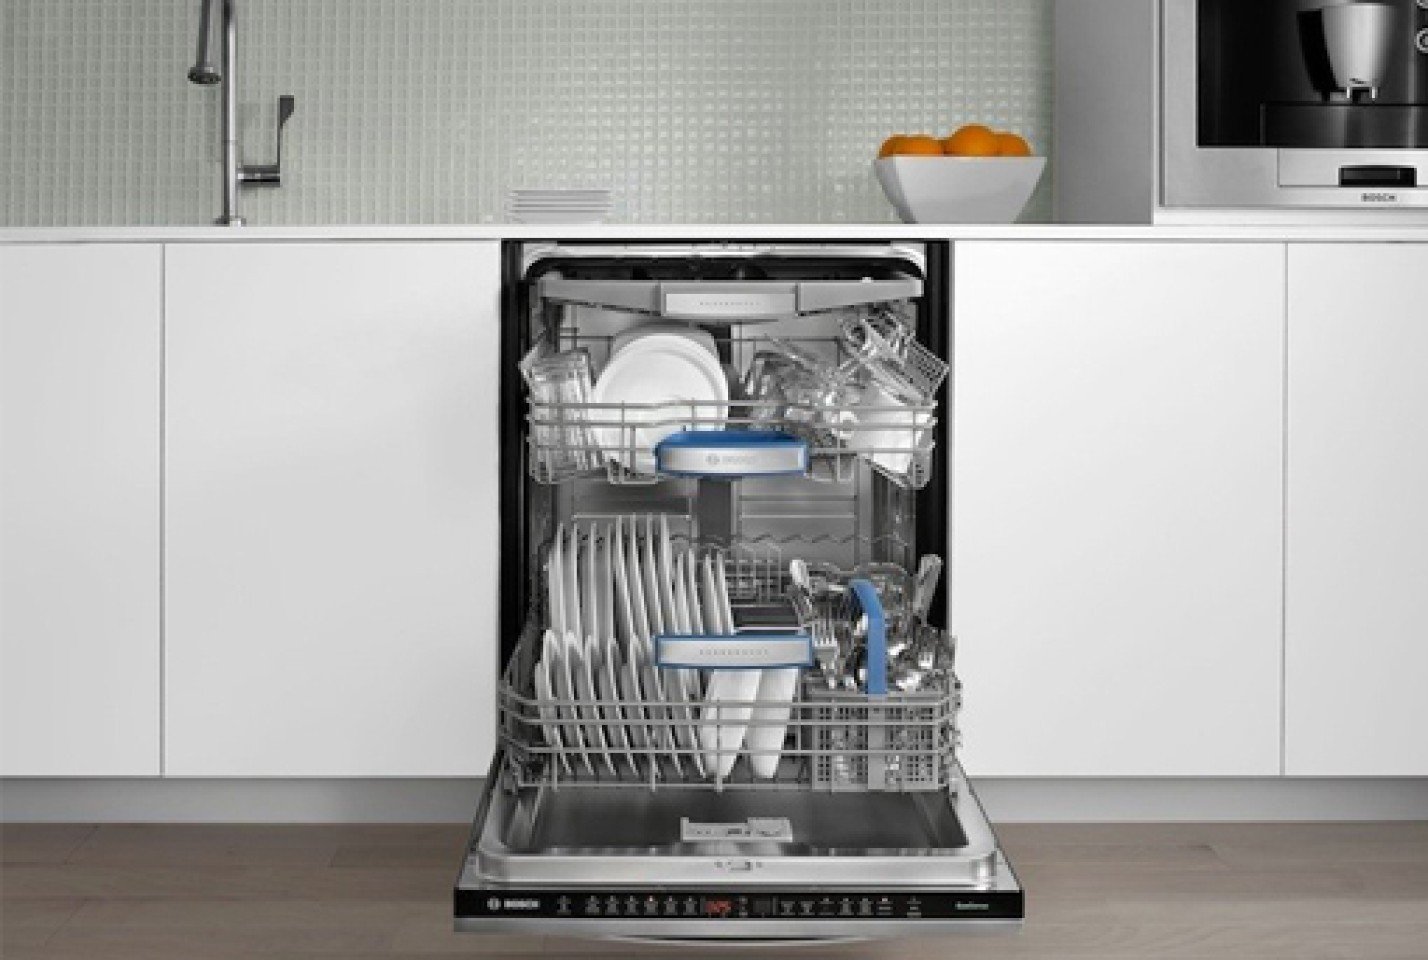 Сравнить посудомоечные машины. Посудомоечная машина Siemens 45 см встраиваемая. Посудомойка бош 60 см встраиваемая. Electrolux ESL 94320 la. Посудомойка Bosch 45 см встраиваемая.